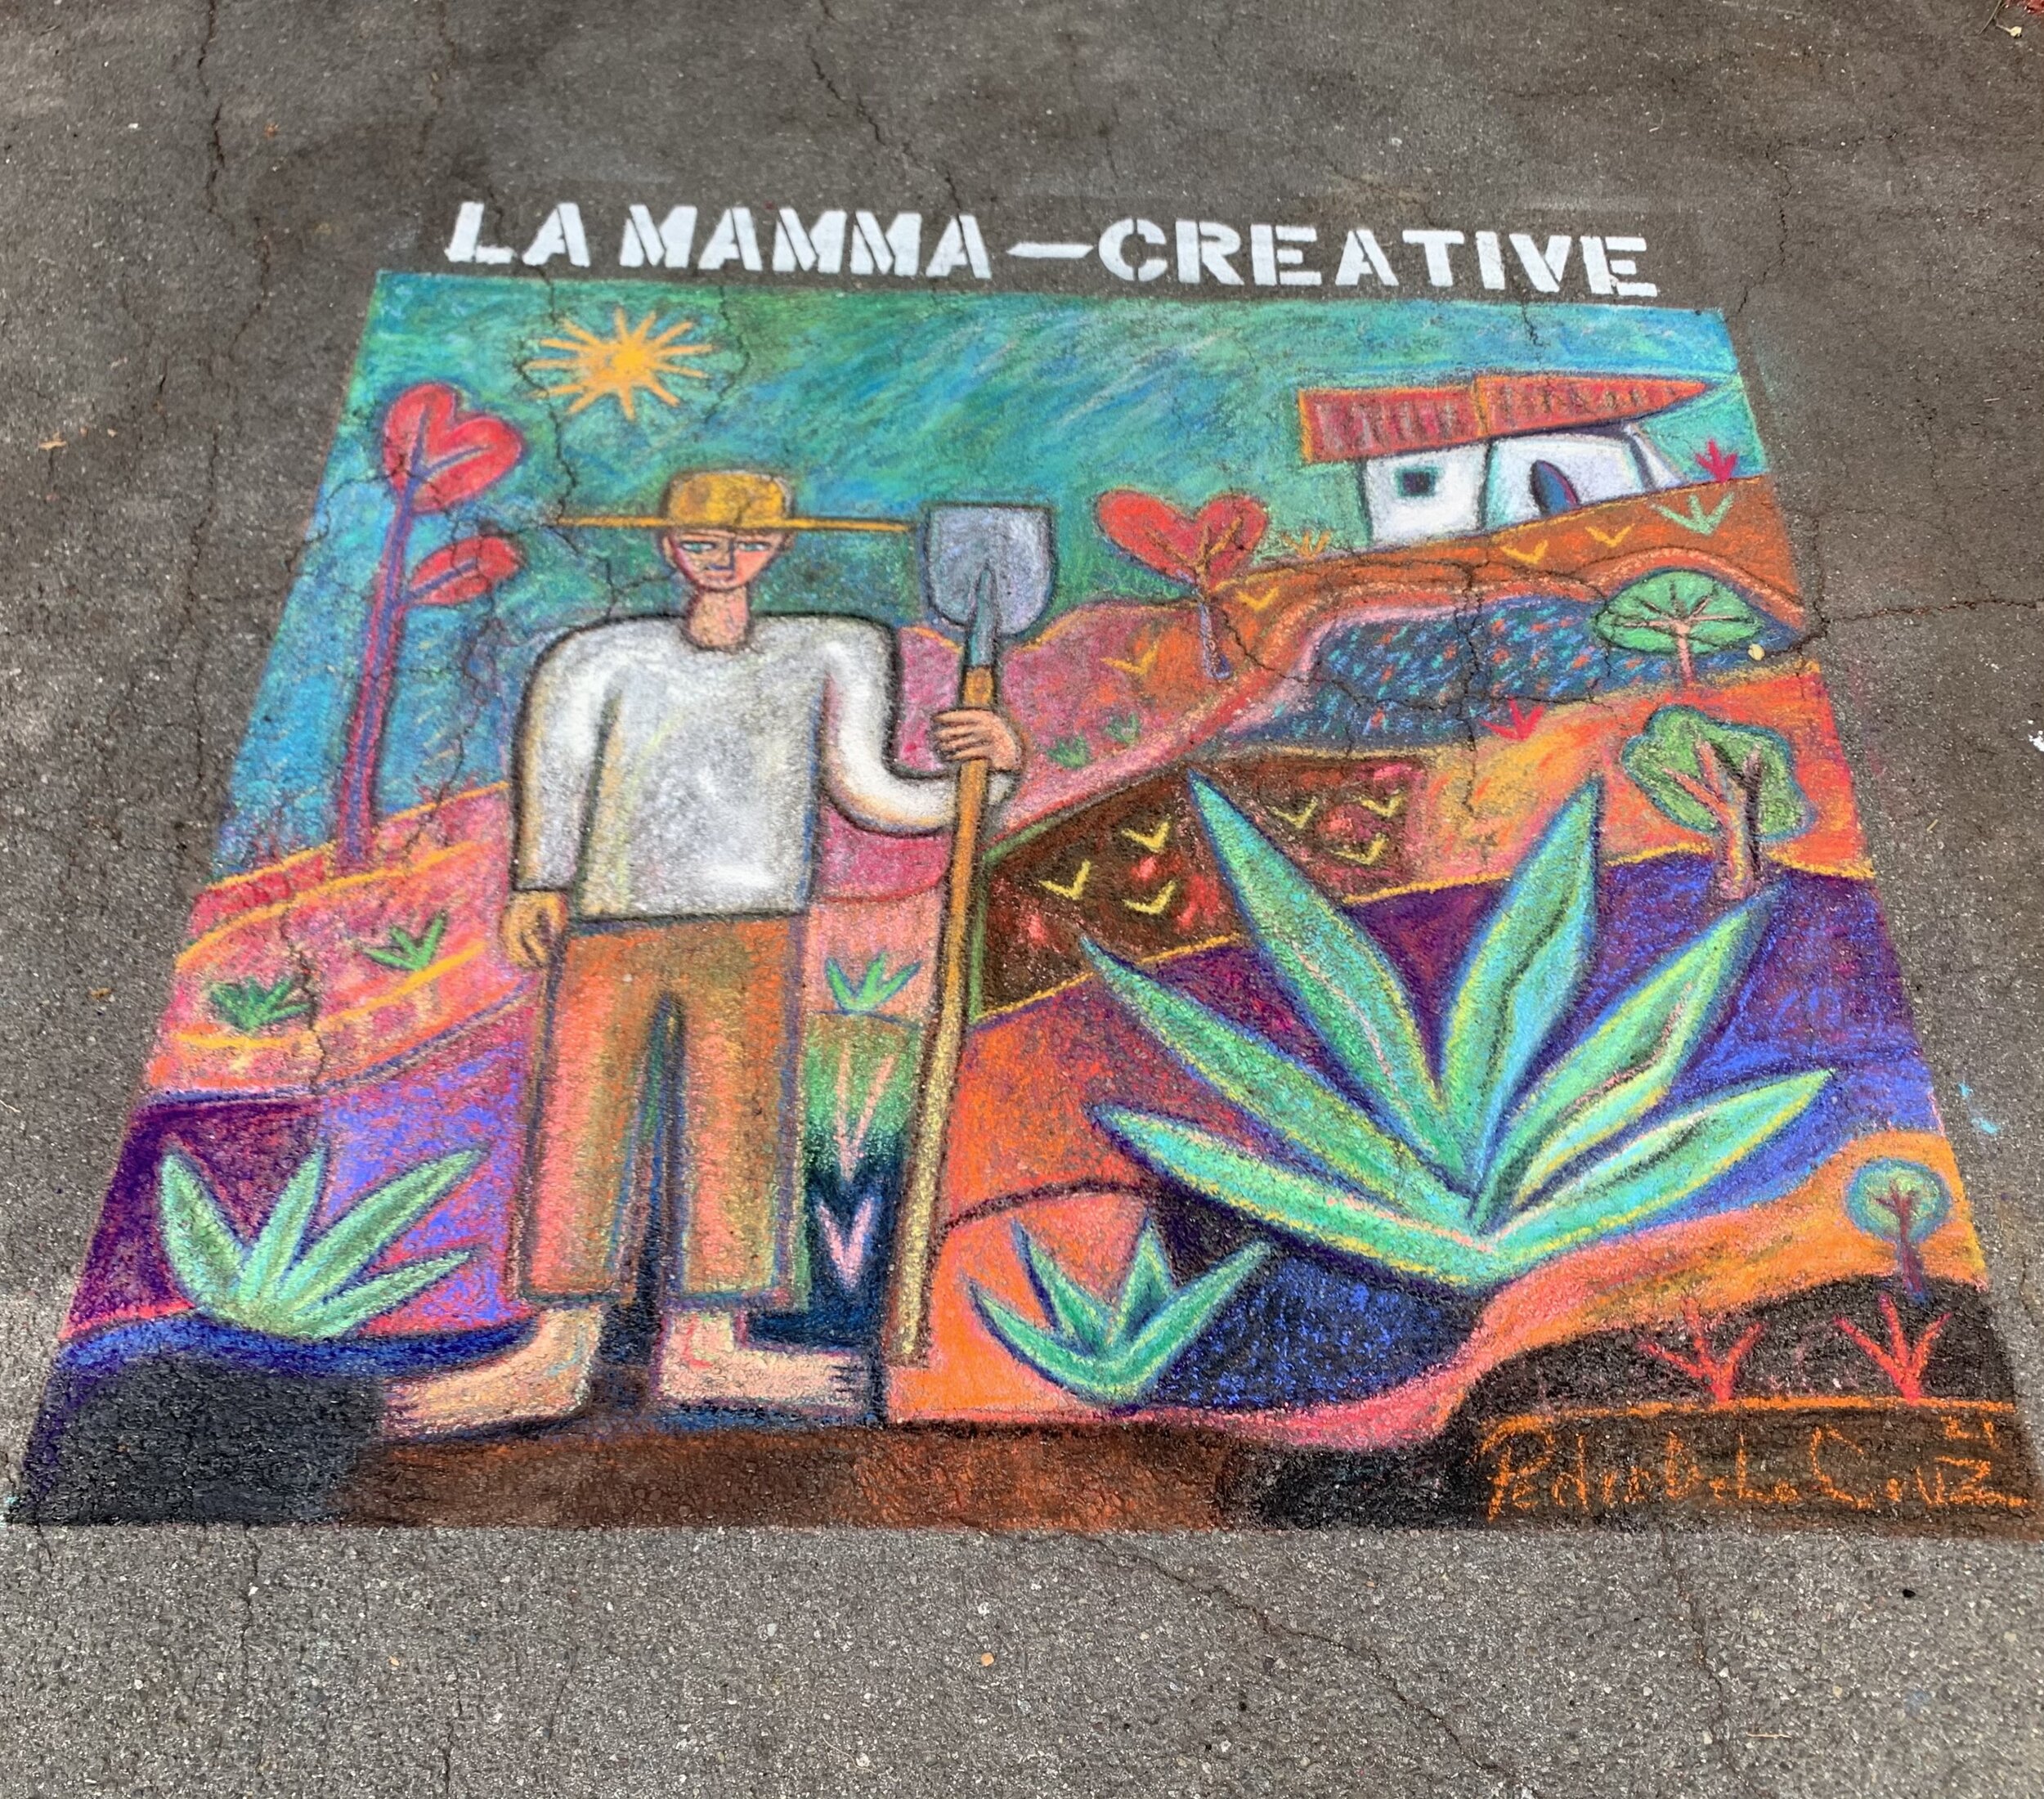  LA MAMMA-Creataive Artist:  Pedro De La Cruz Photo:  Genevieve Badone Assili 